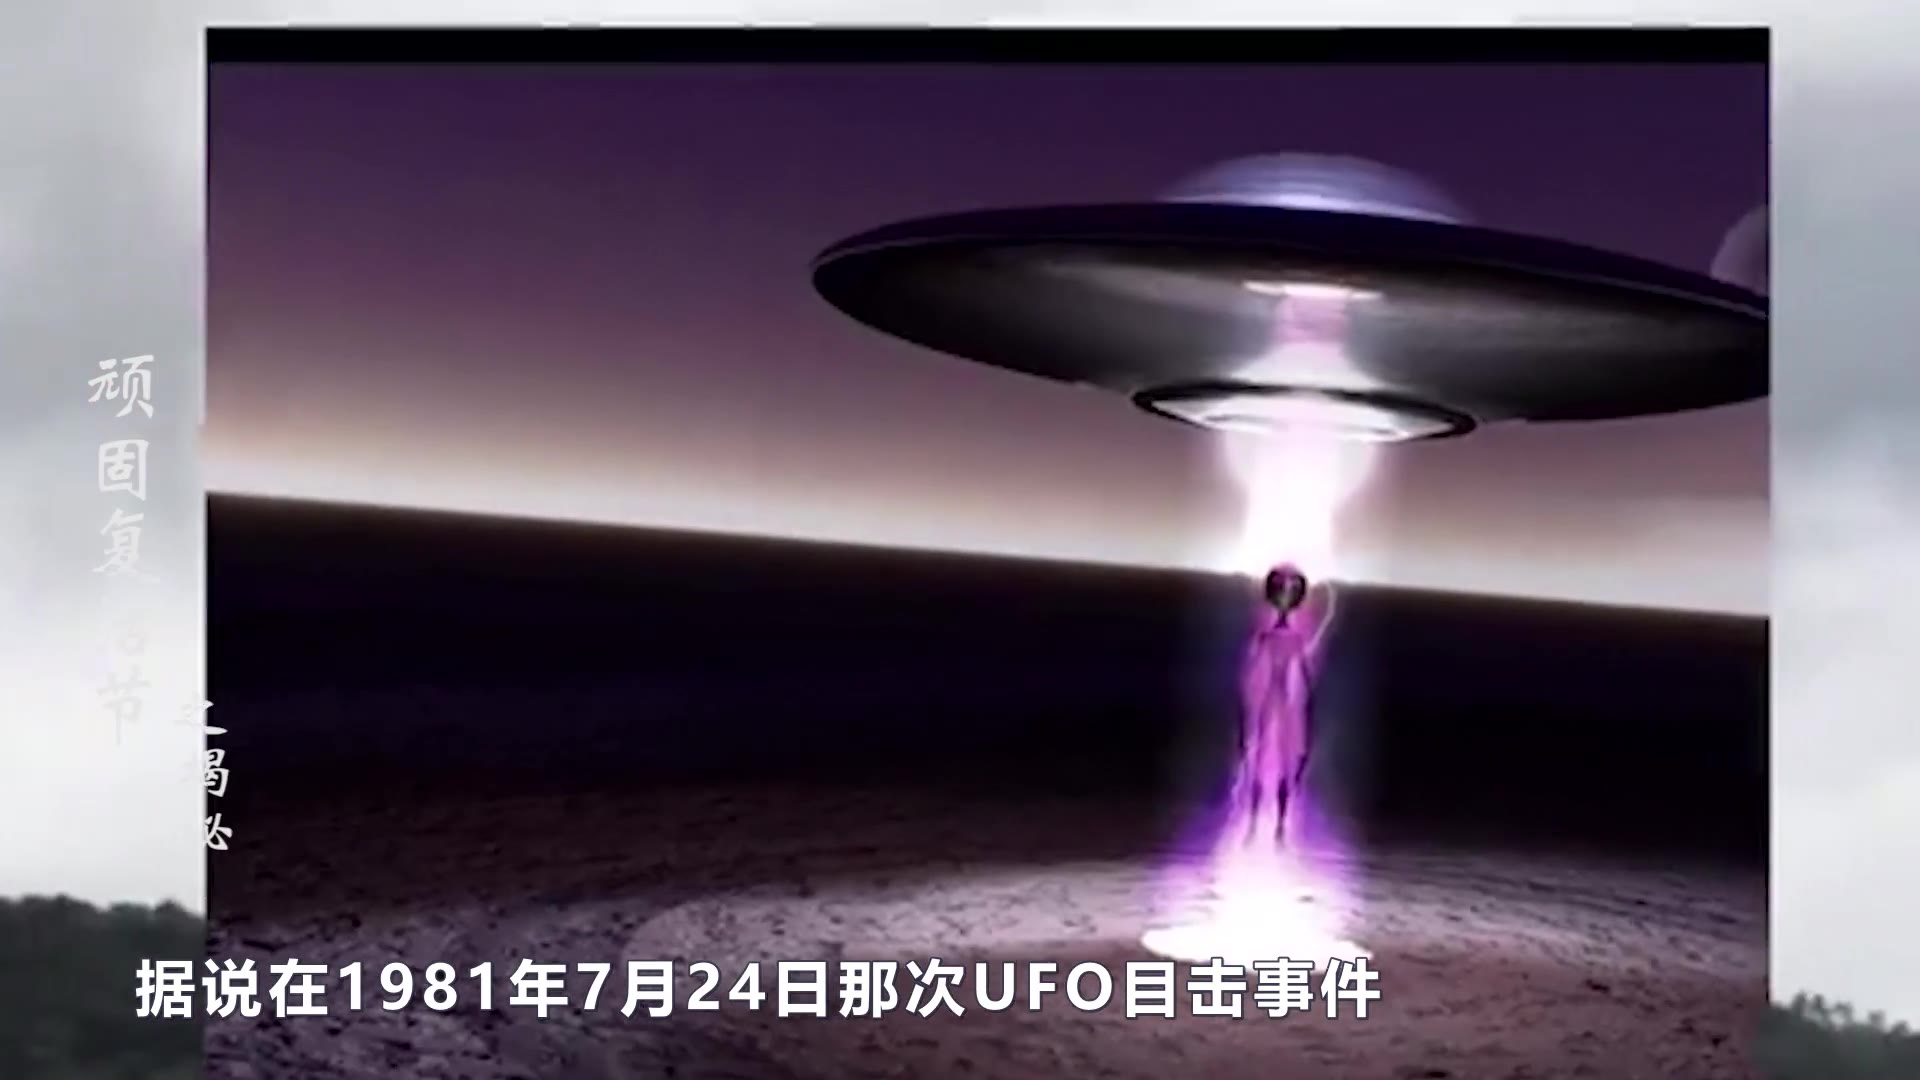 ufo真实事件案件图片